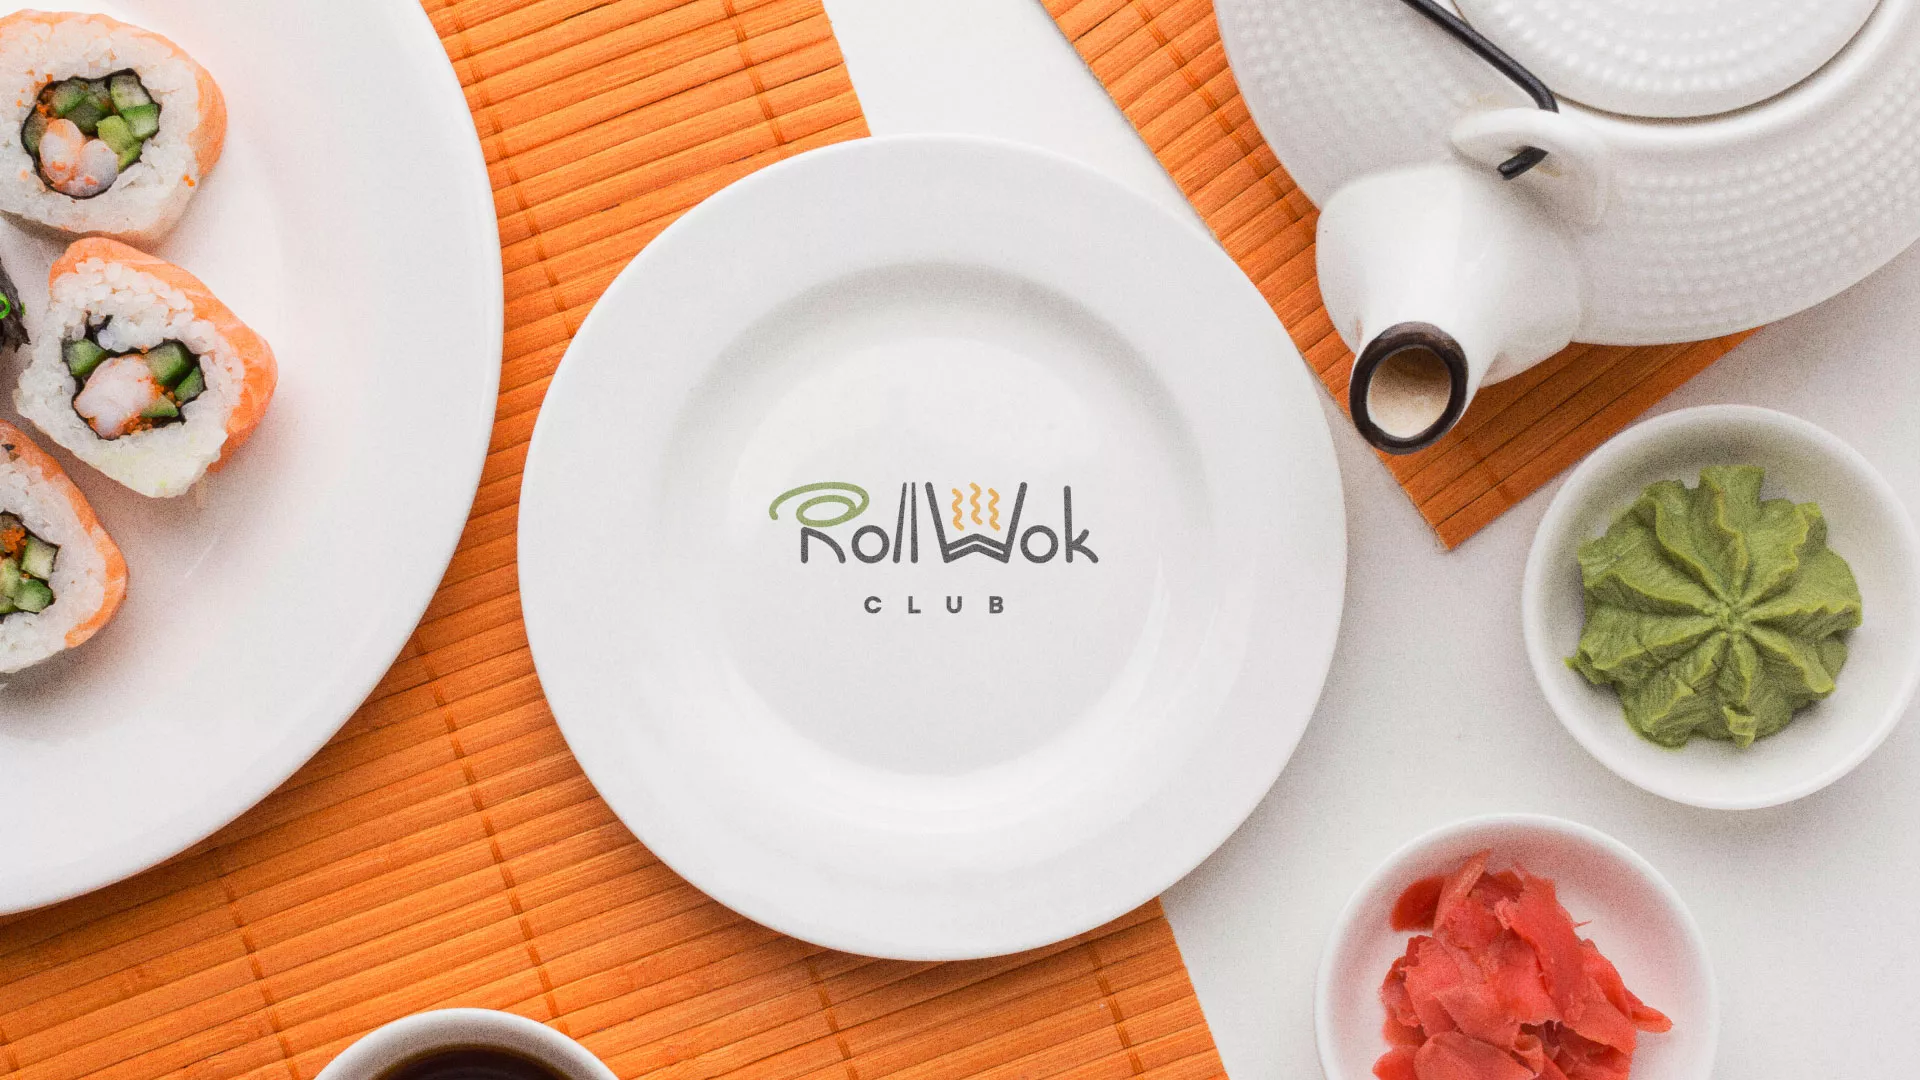 Разработка логотипа и фирменного стиля суши-бара «Roll Wok Club» в Геленджике